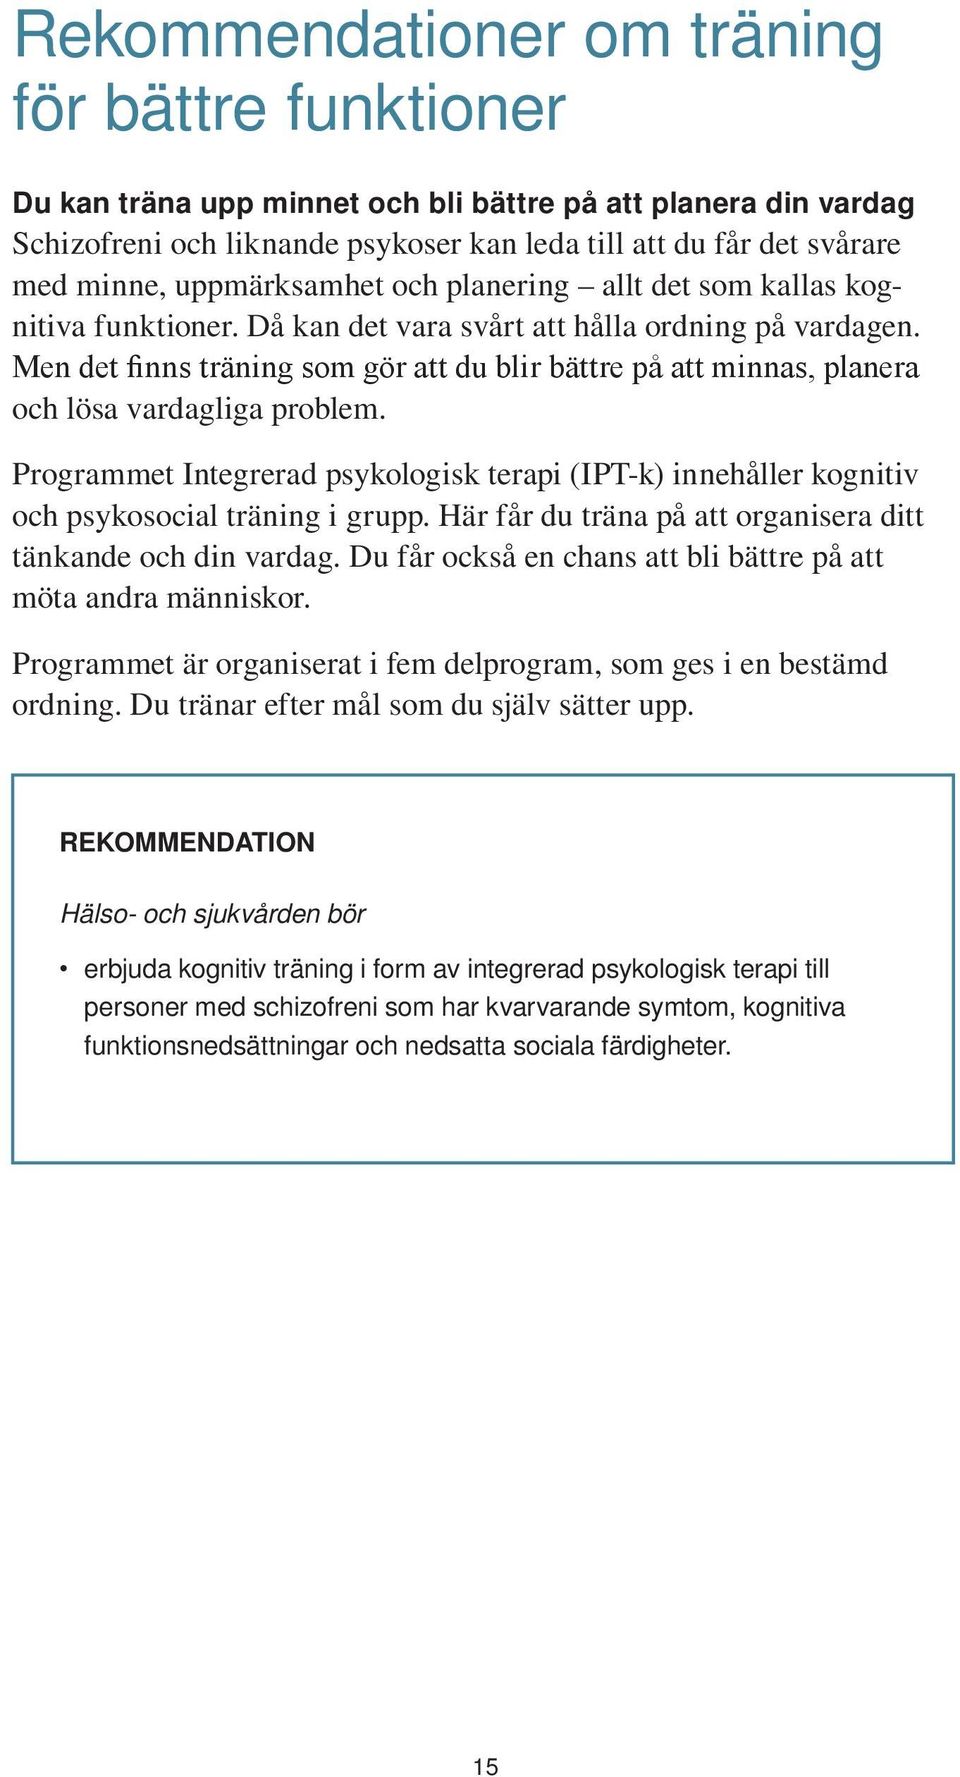 Programmet Integrerad psykologisk terapi (IPT-k) innehåller kognitiv och psykosocial träning i grupp. Här får du träna på att organisera ditt tänkande och din vardag.